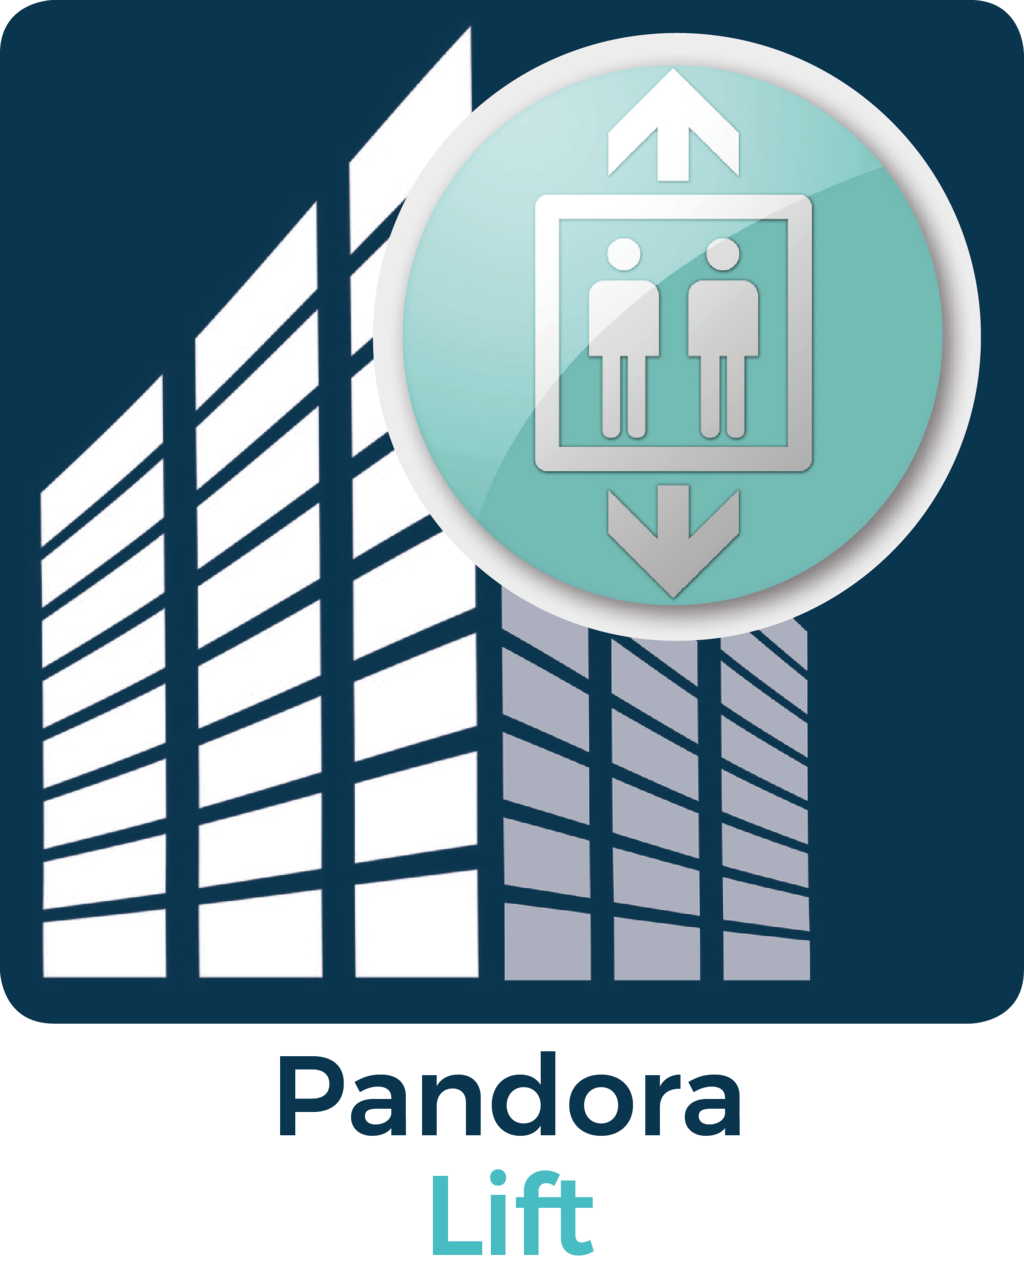 Pandora 1e51a8f968c5-930e4f1fc440-1530617904.png